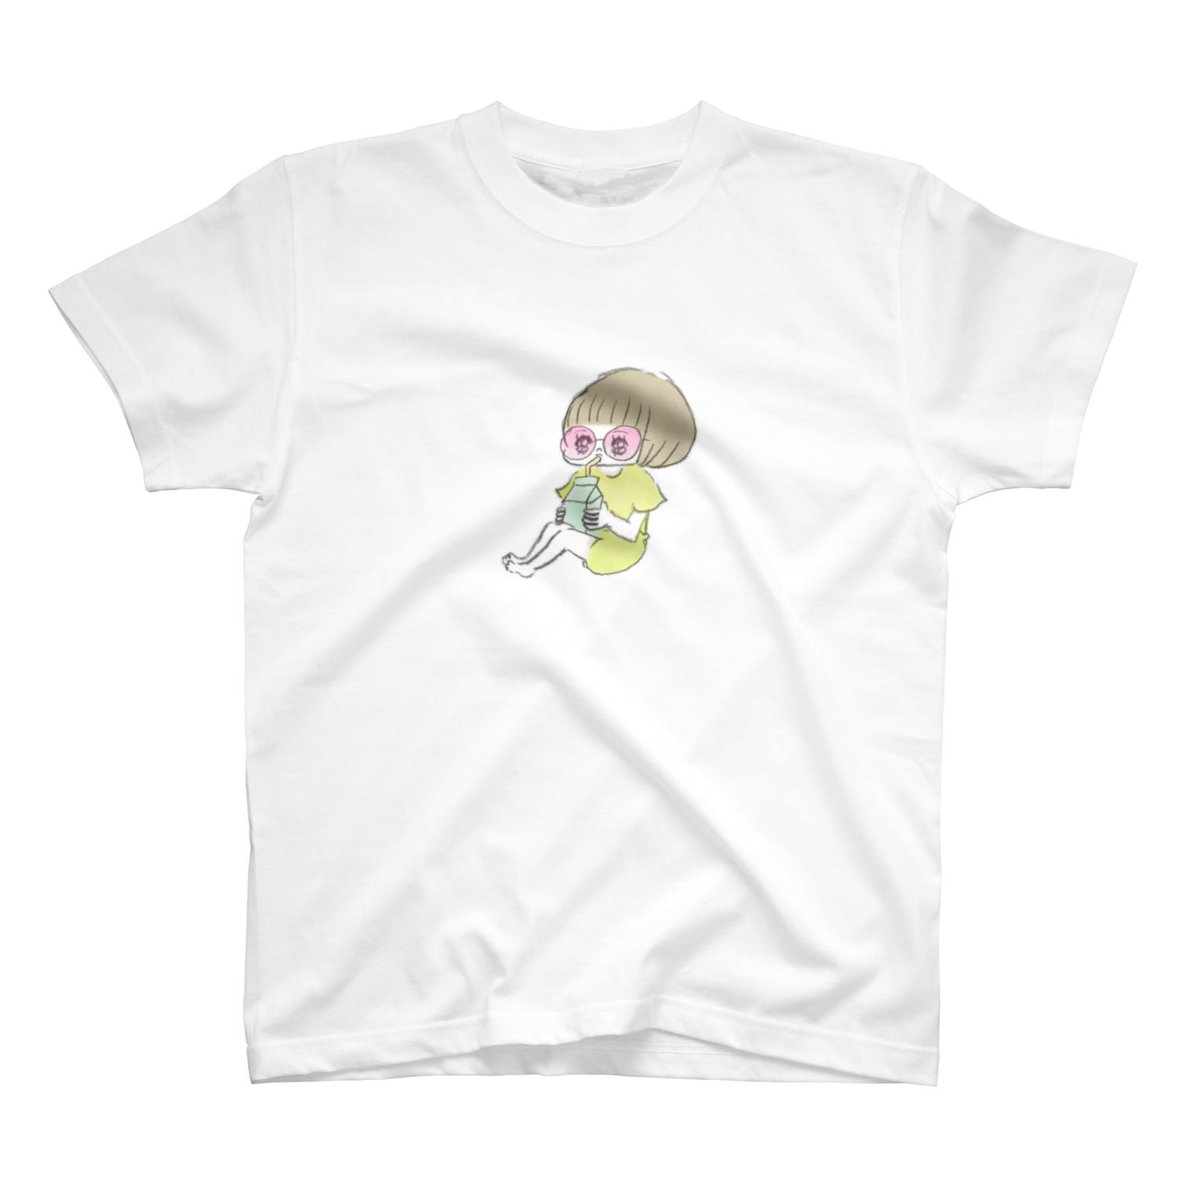 スズリのTシャツセールに合わせてTシャツを作ってみました。1000円引き!チェックチェック! #SUZURI夏のTシャツセール https://t.co/3yIdrU5bCE 